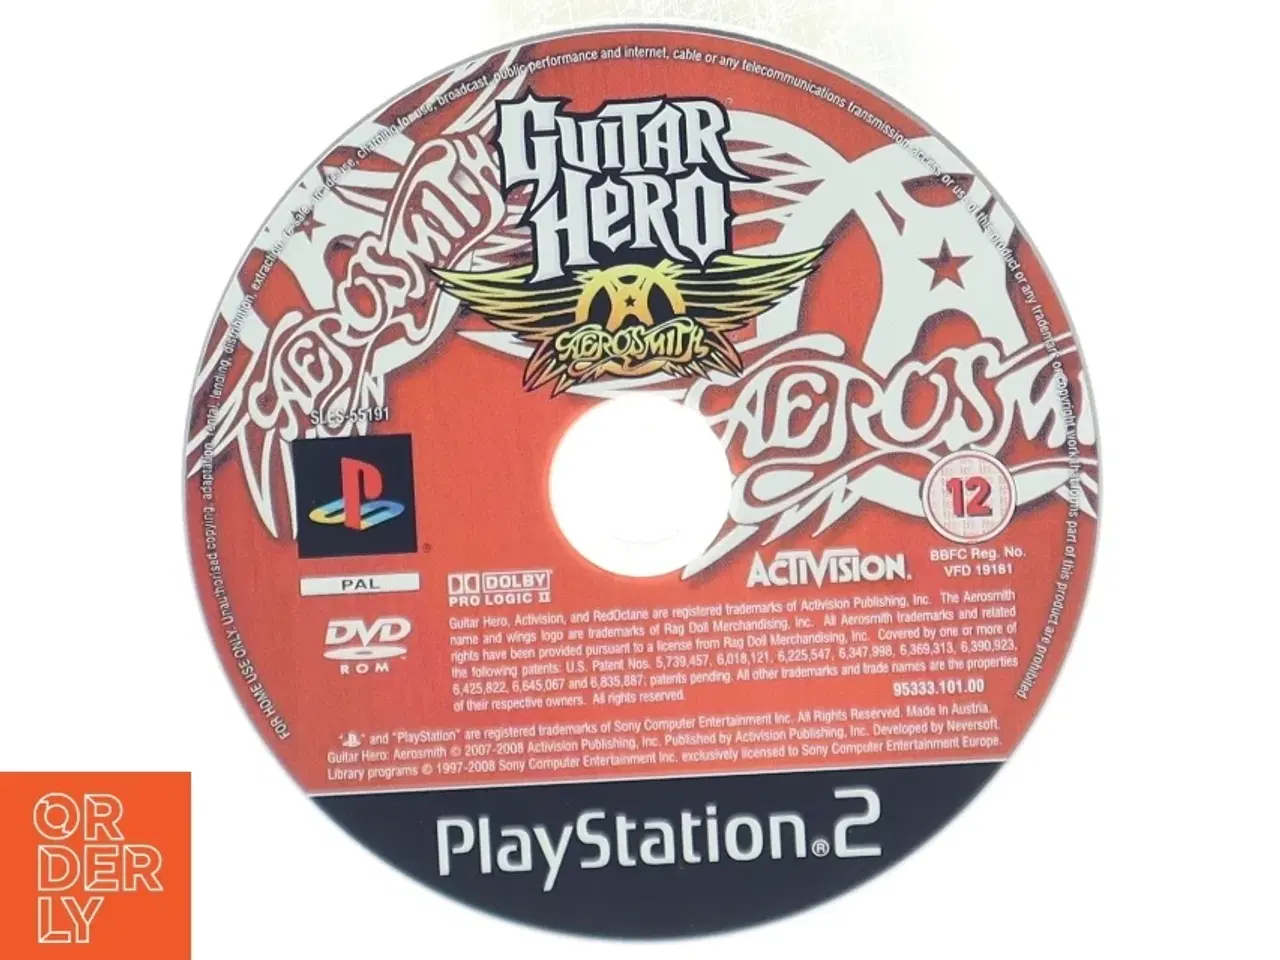 Billede 1 - Guitar Hero: Aerosmith til PlayStation 2 fra Activision